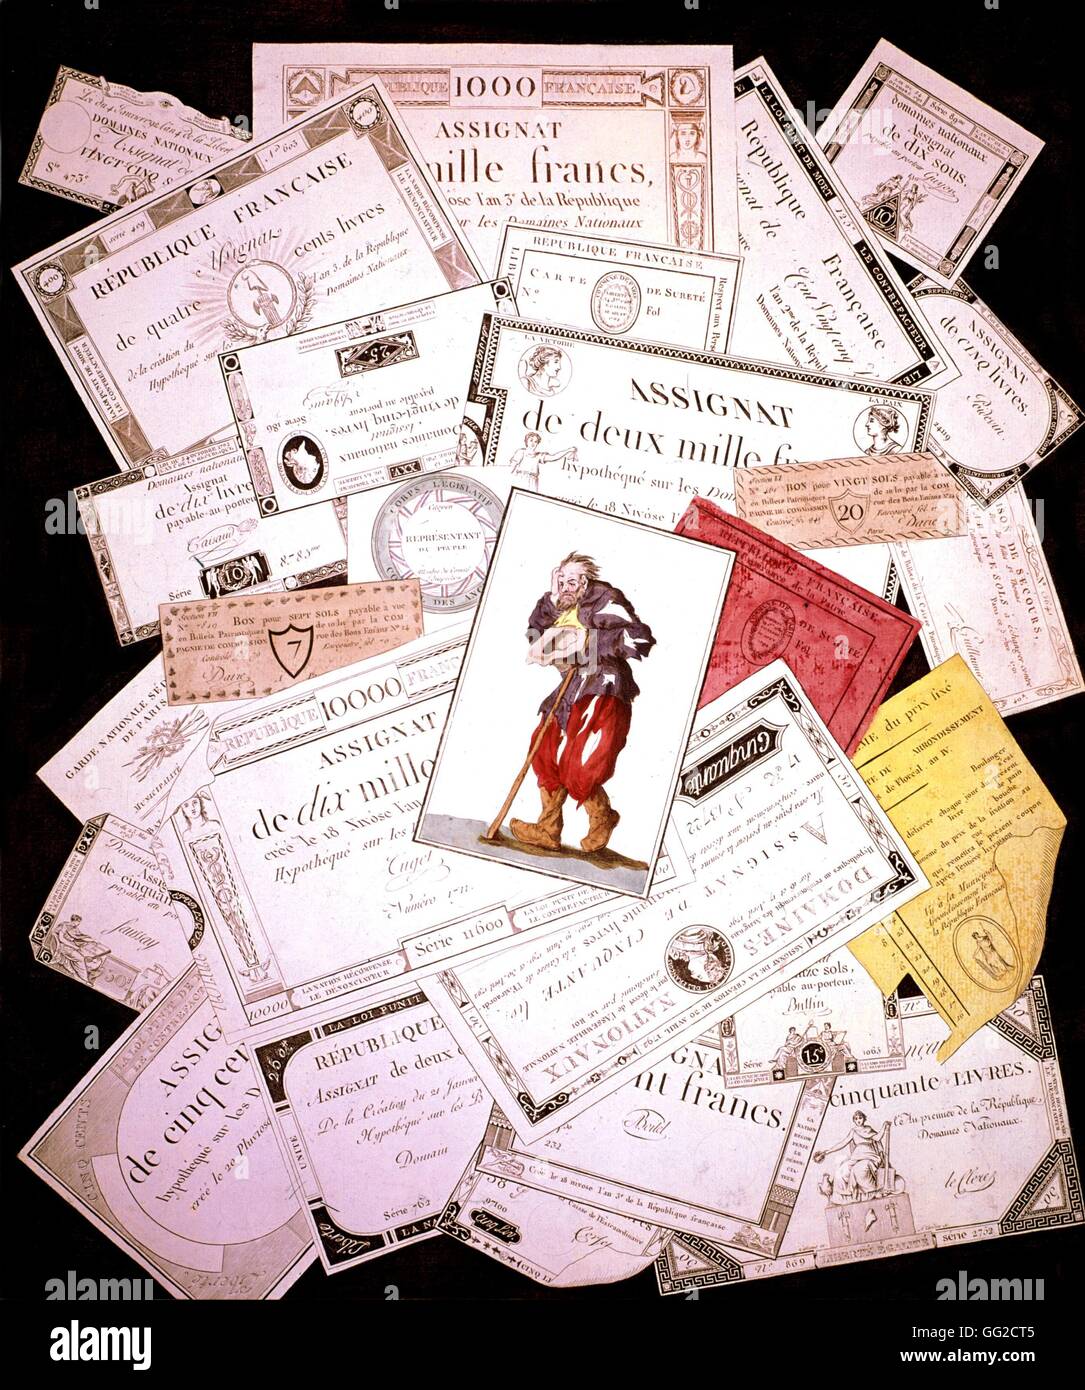 Die Assignaten und den Armen wicht ". Angriff auf die "Assignaten" (Banknoten verwendet während der französischen Revolution) 19. Februar 1796 Babeuf Frankreich, französische Revolution von 1789 Stockfoto